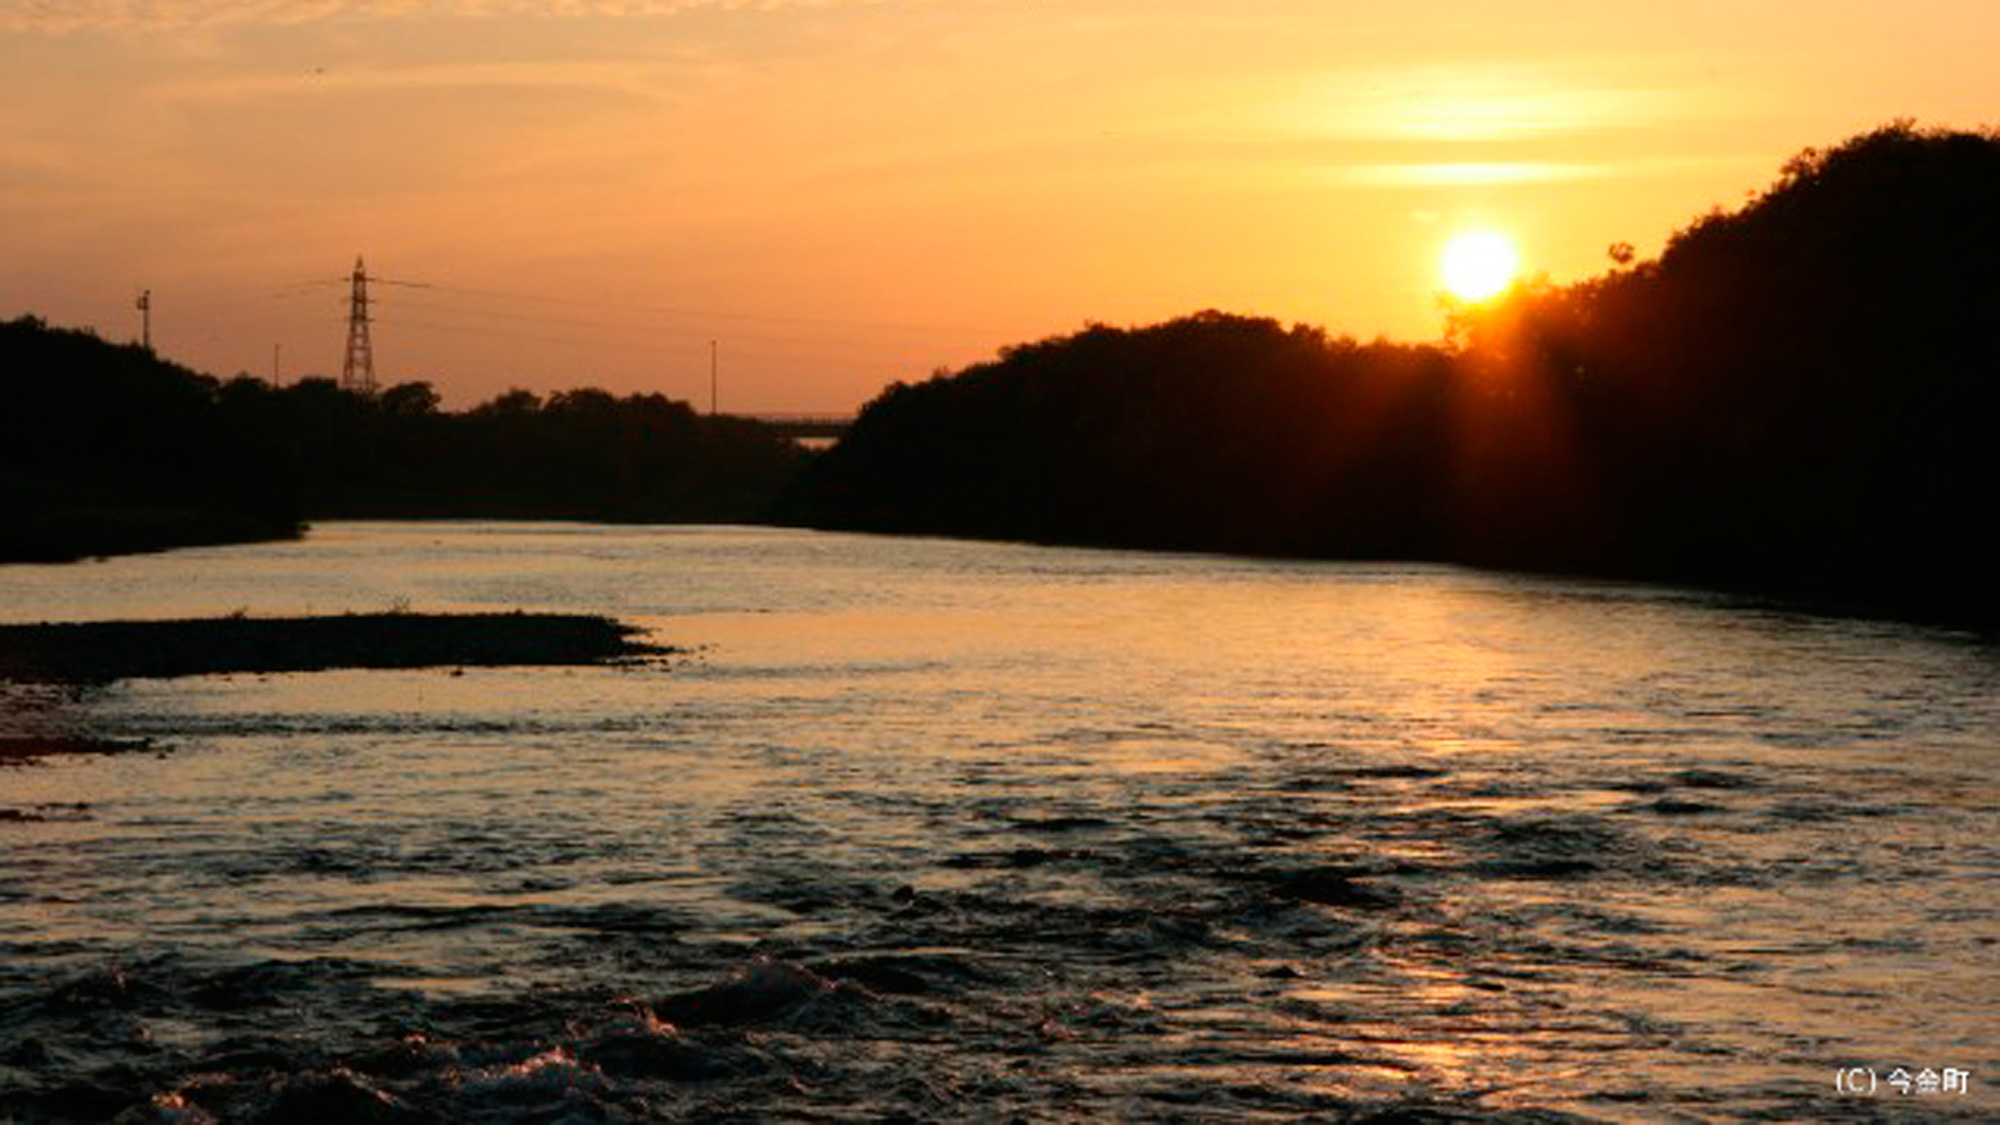 *後志利別川／美しい夕暮れの景色。カメラを片手に出かけてみませんか？